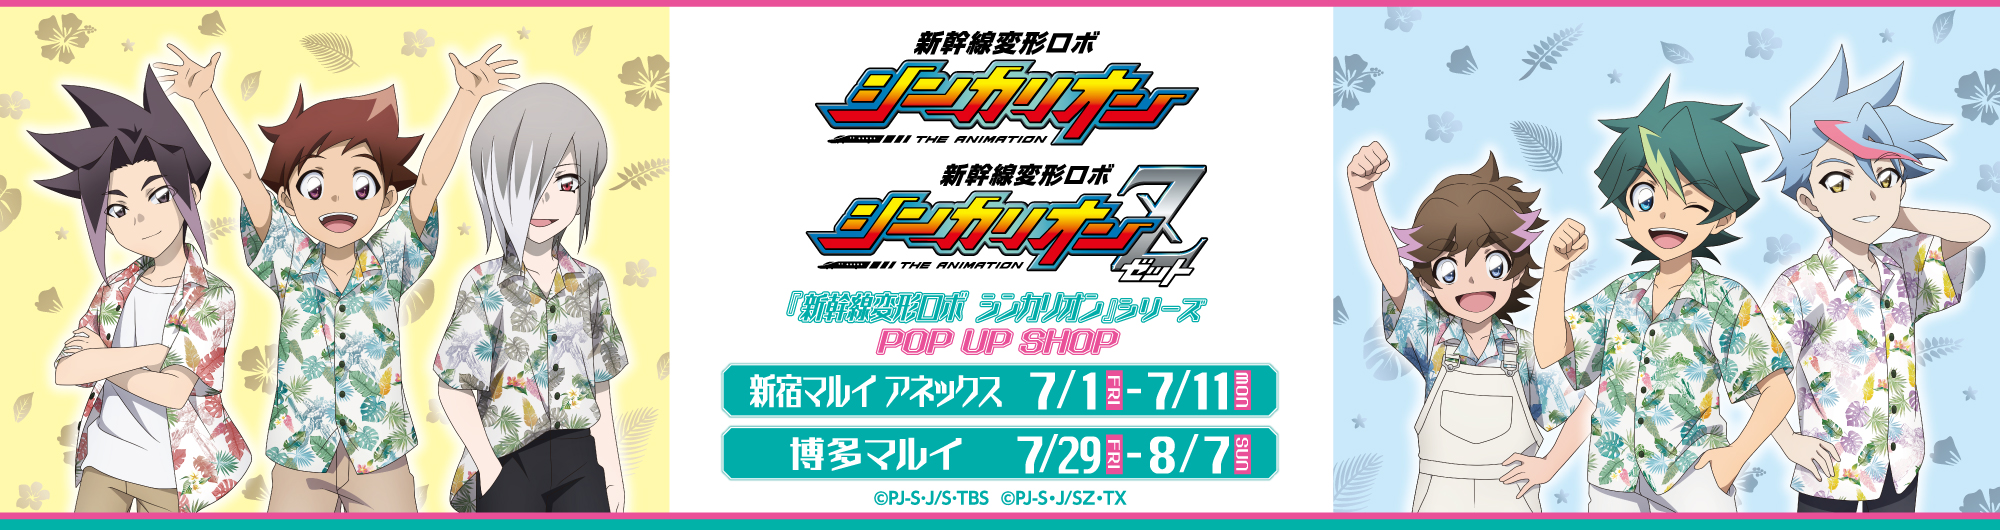 新幹線変形ロボ シンカリオン シリーズpop Up Shopが 新宿マルイアネックス 博多マルイにて開催決定 Newscast